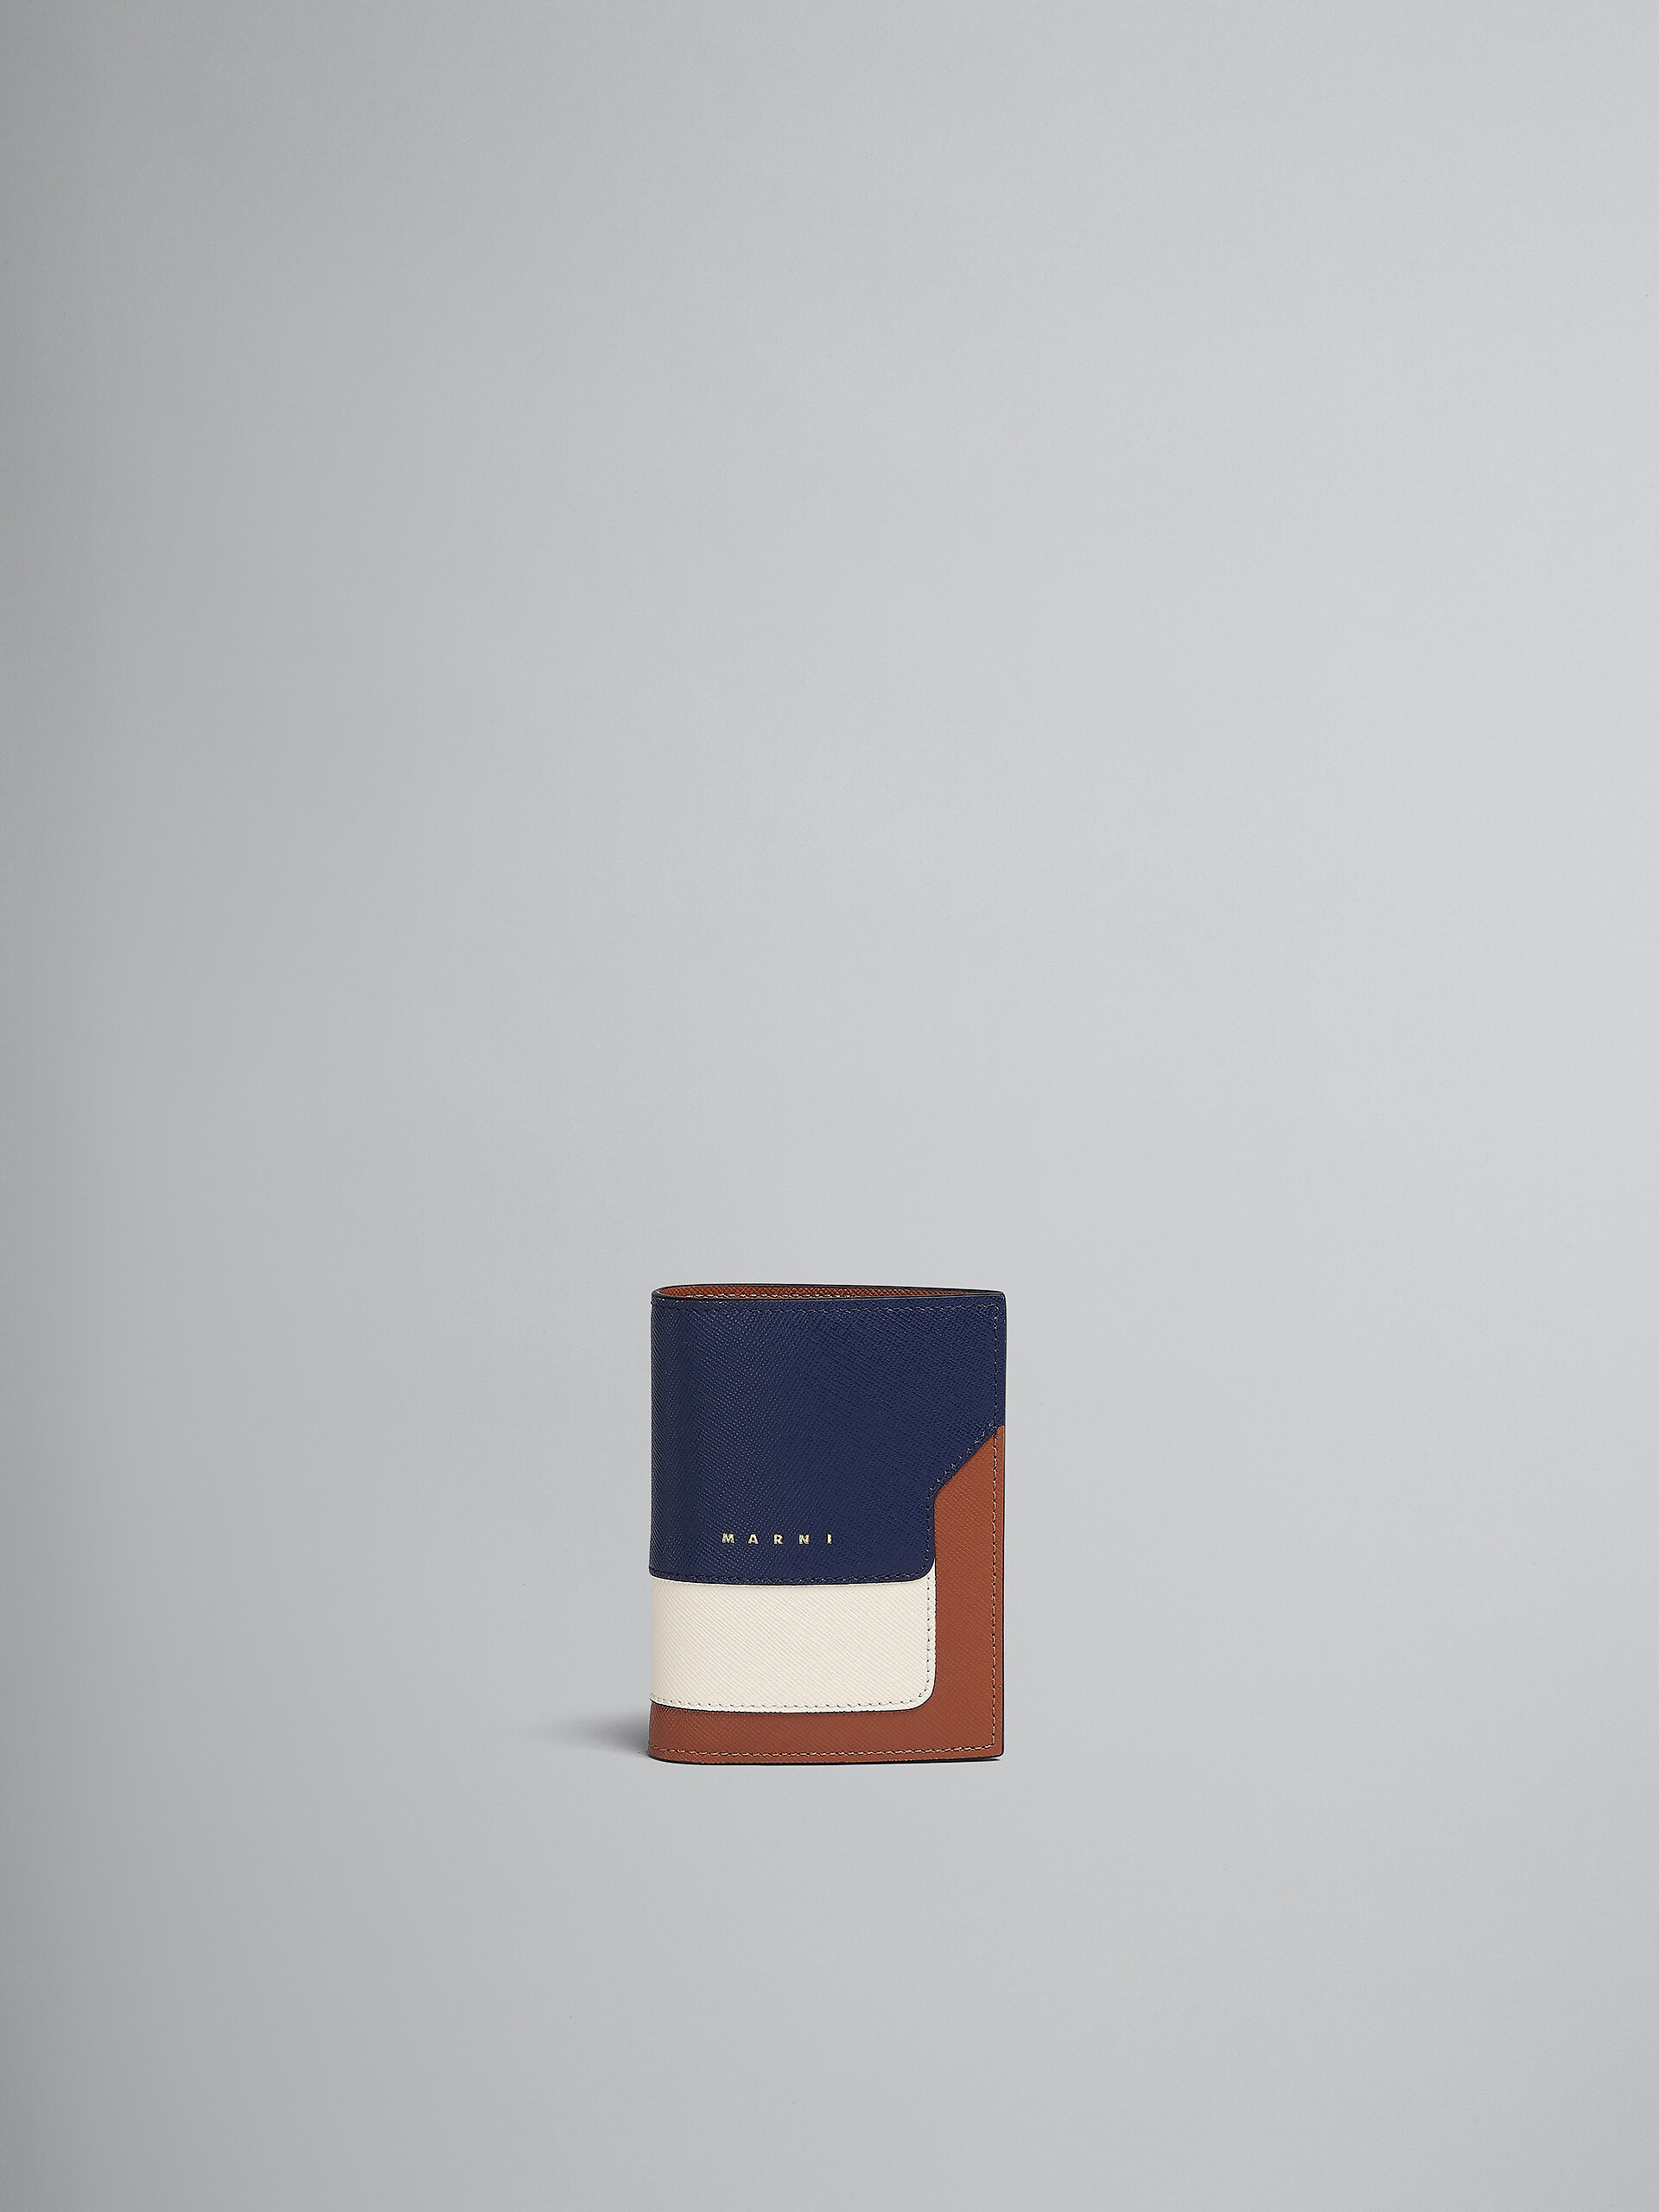 Portefeuille à deux volets en cuir saffiano bleu, blanc et marron - Portefeuilles - Image 1